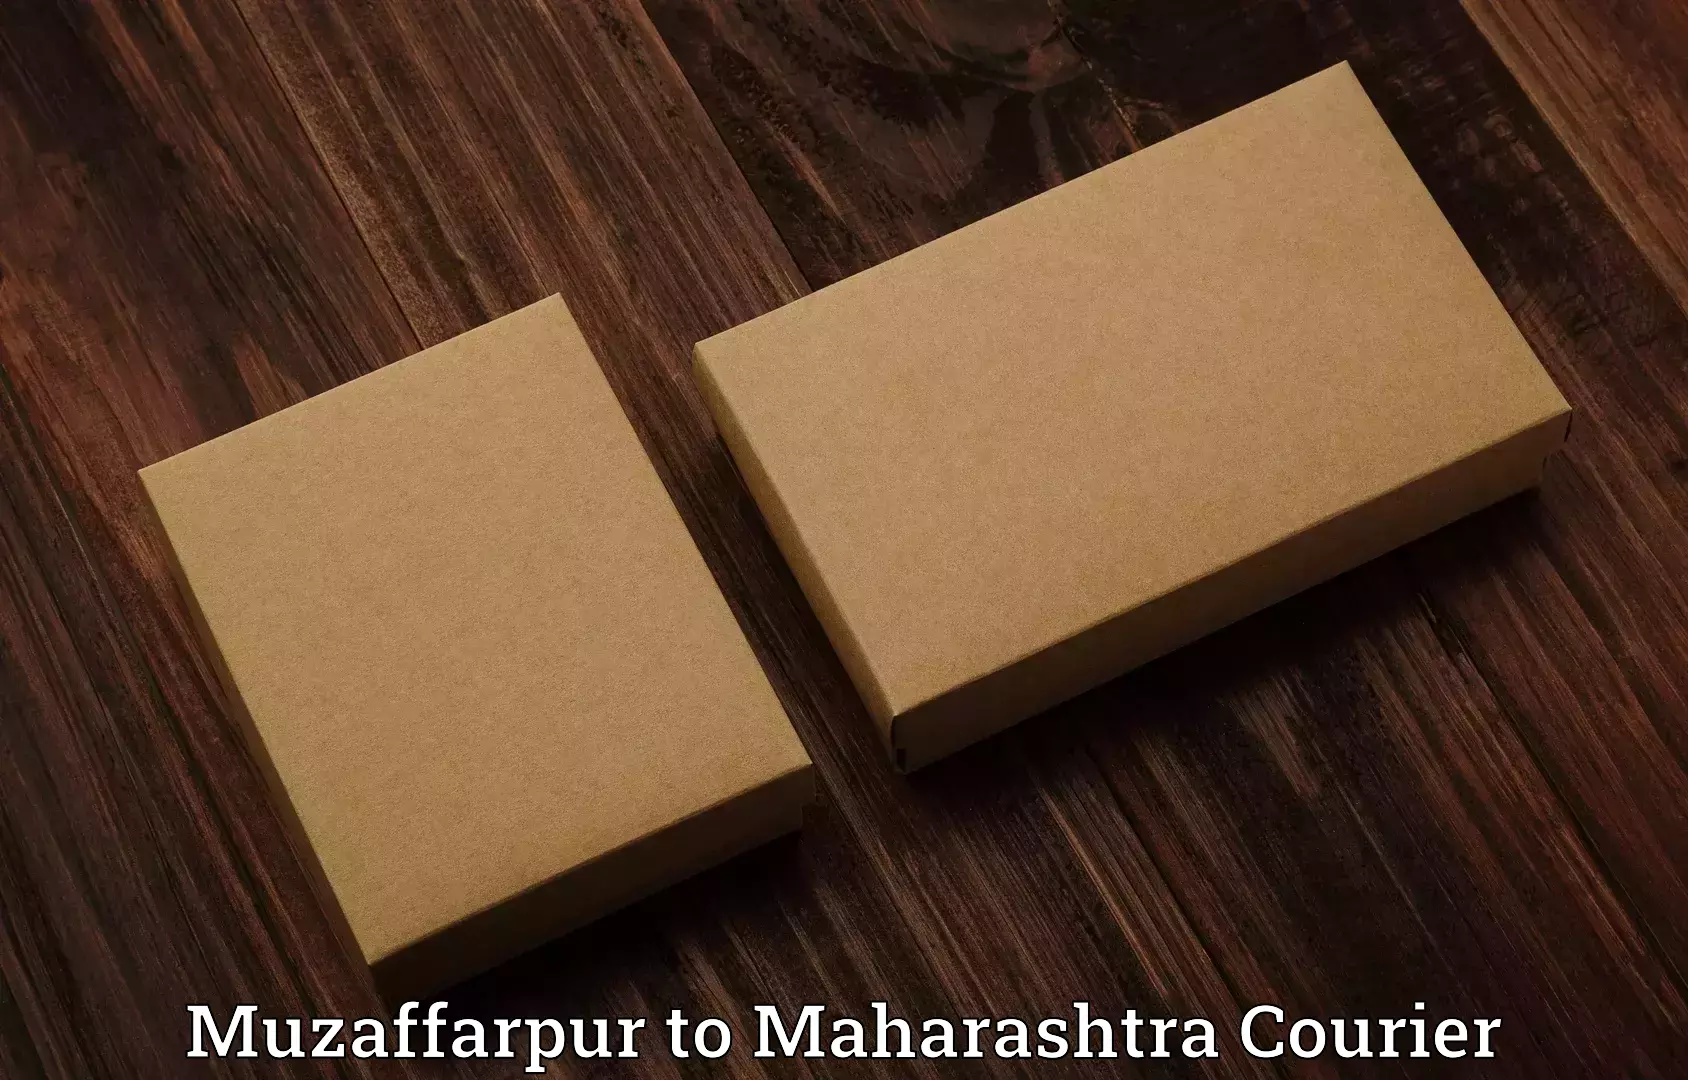 Luggage delivery app Muzaffarpur to Lasalgaon